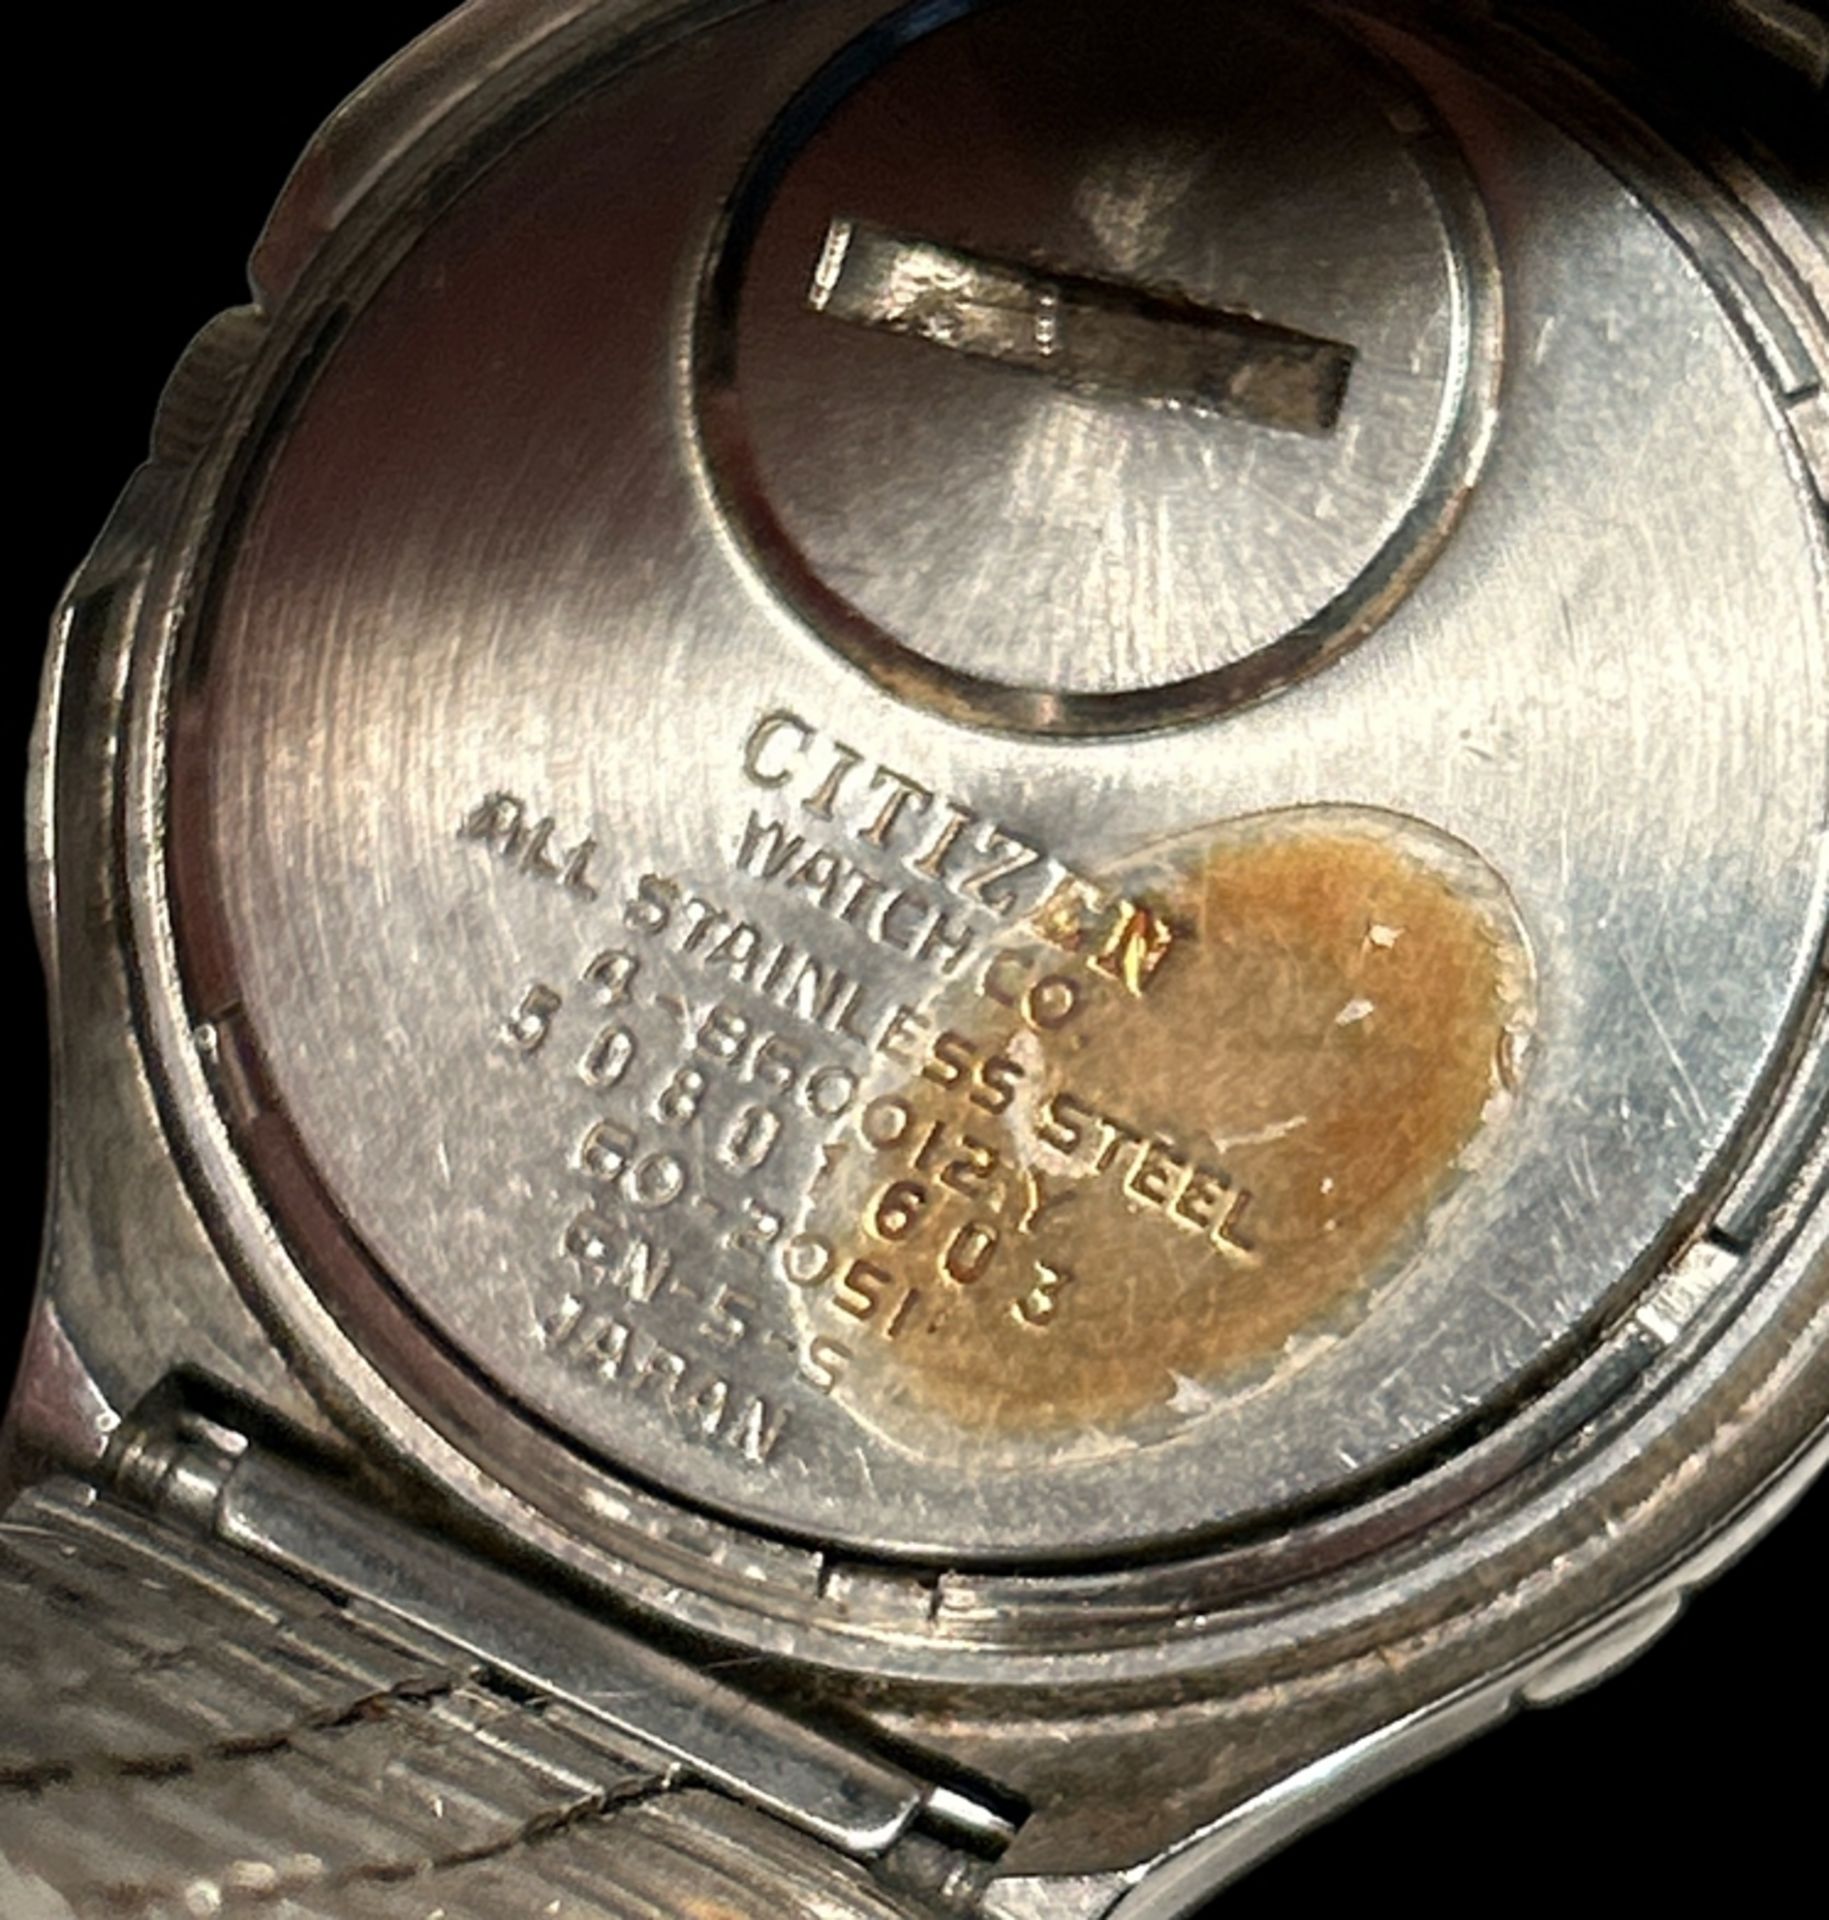 HAU "Citizen Crystron" frühe Quartz Armbanduhr, porig. Stahlband, Werk nicht überprüft - Bild 3 aus 3